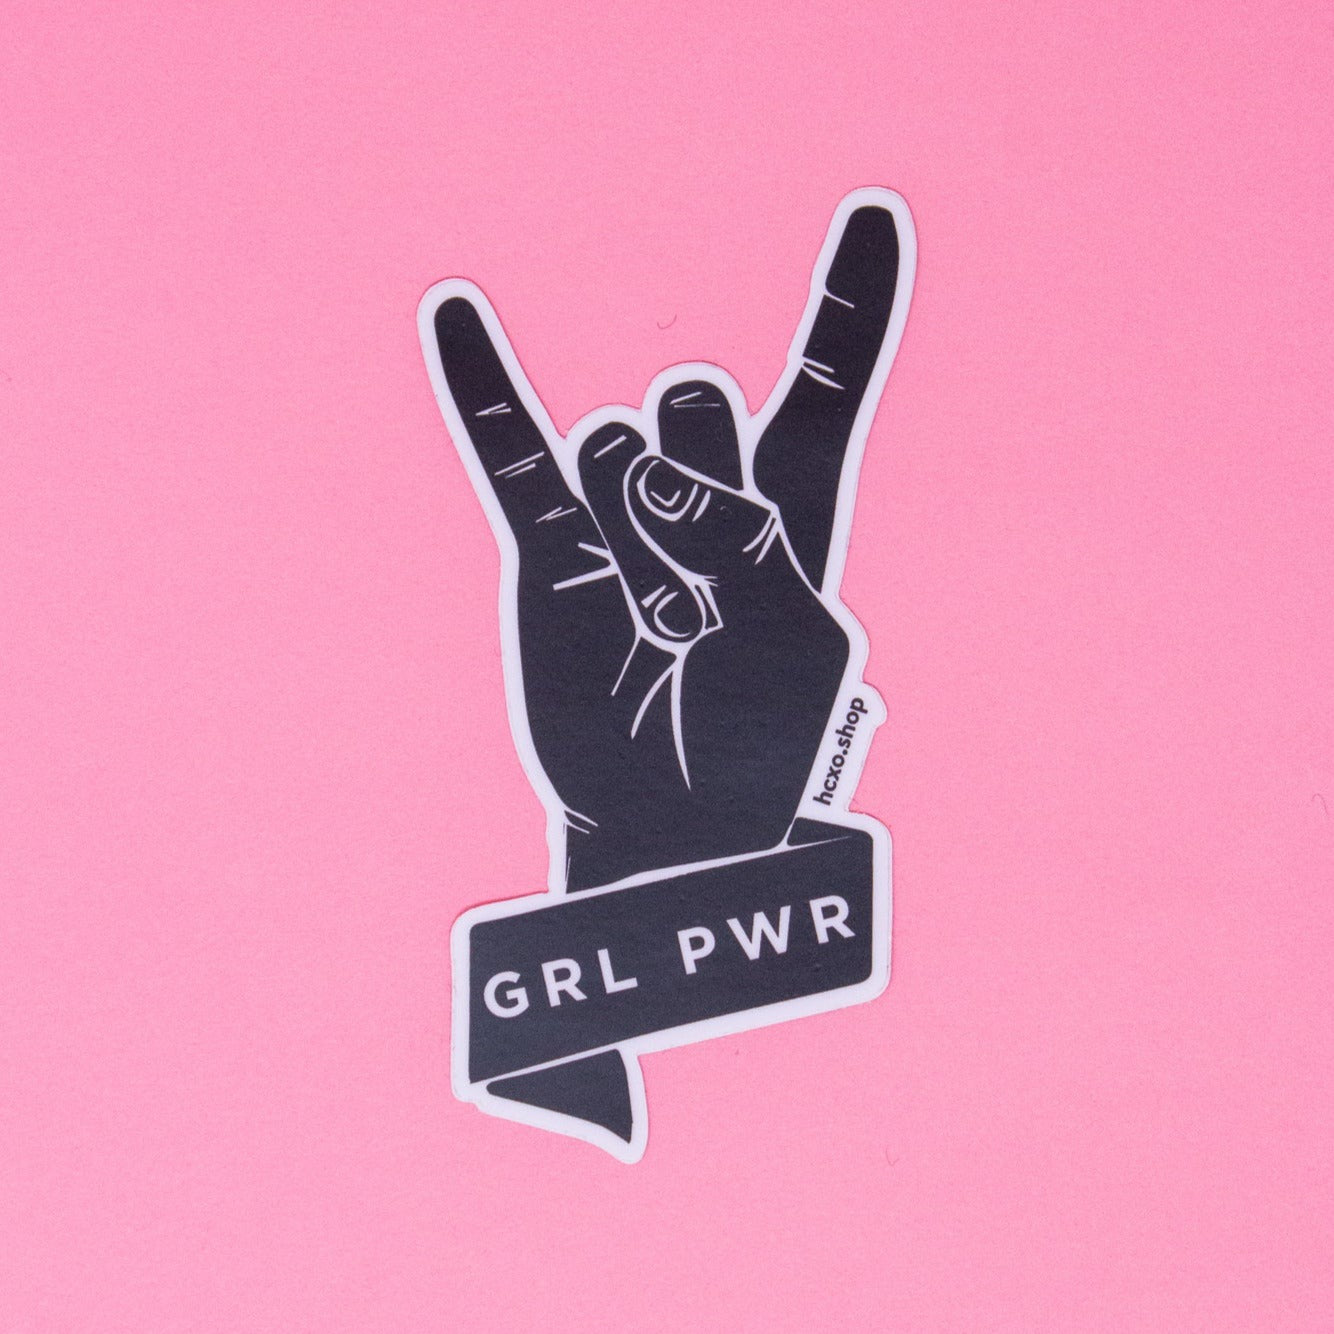 Grl Pwr Sticker - Rock On